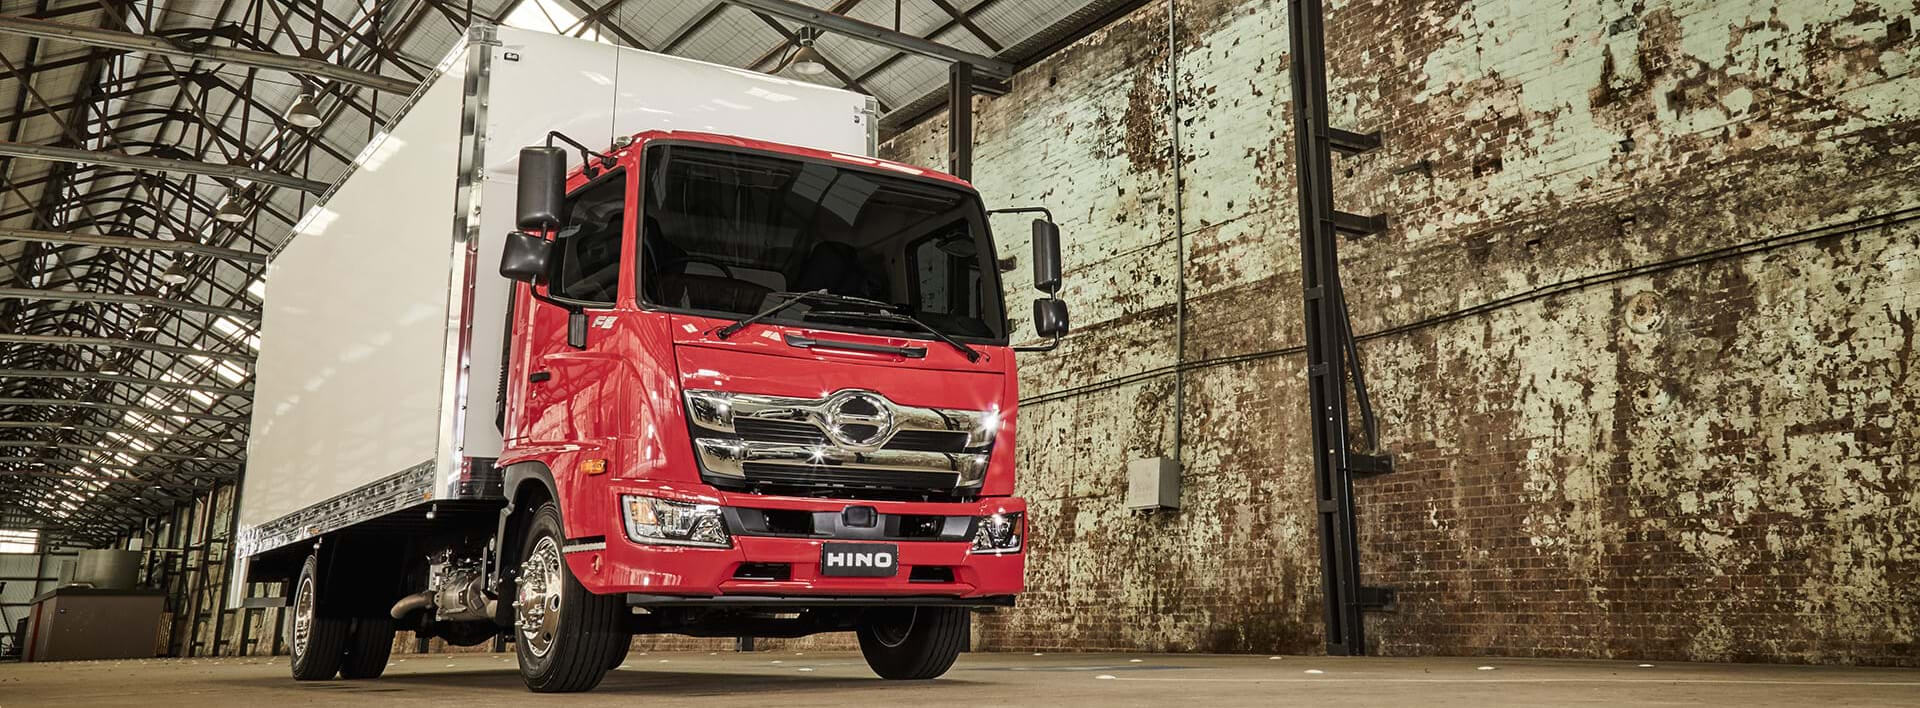 Hino New Trucks & Buses Range